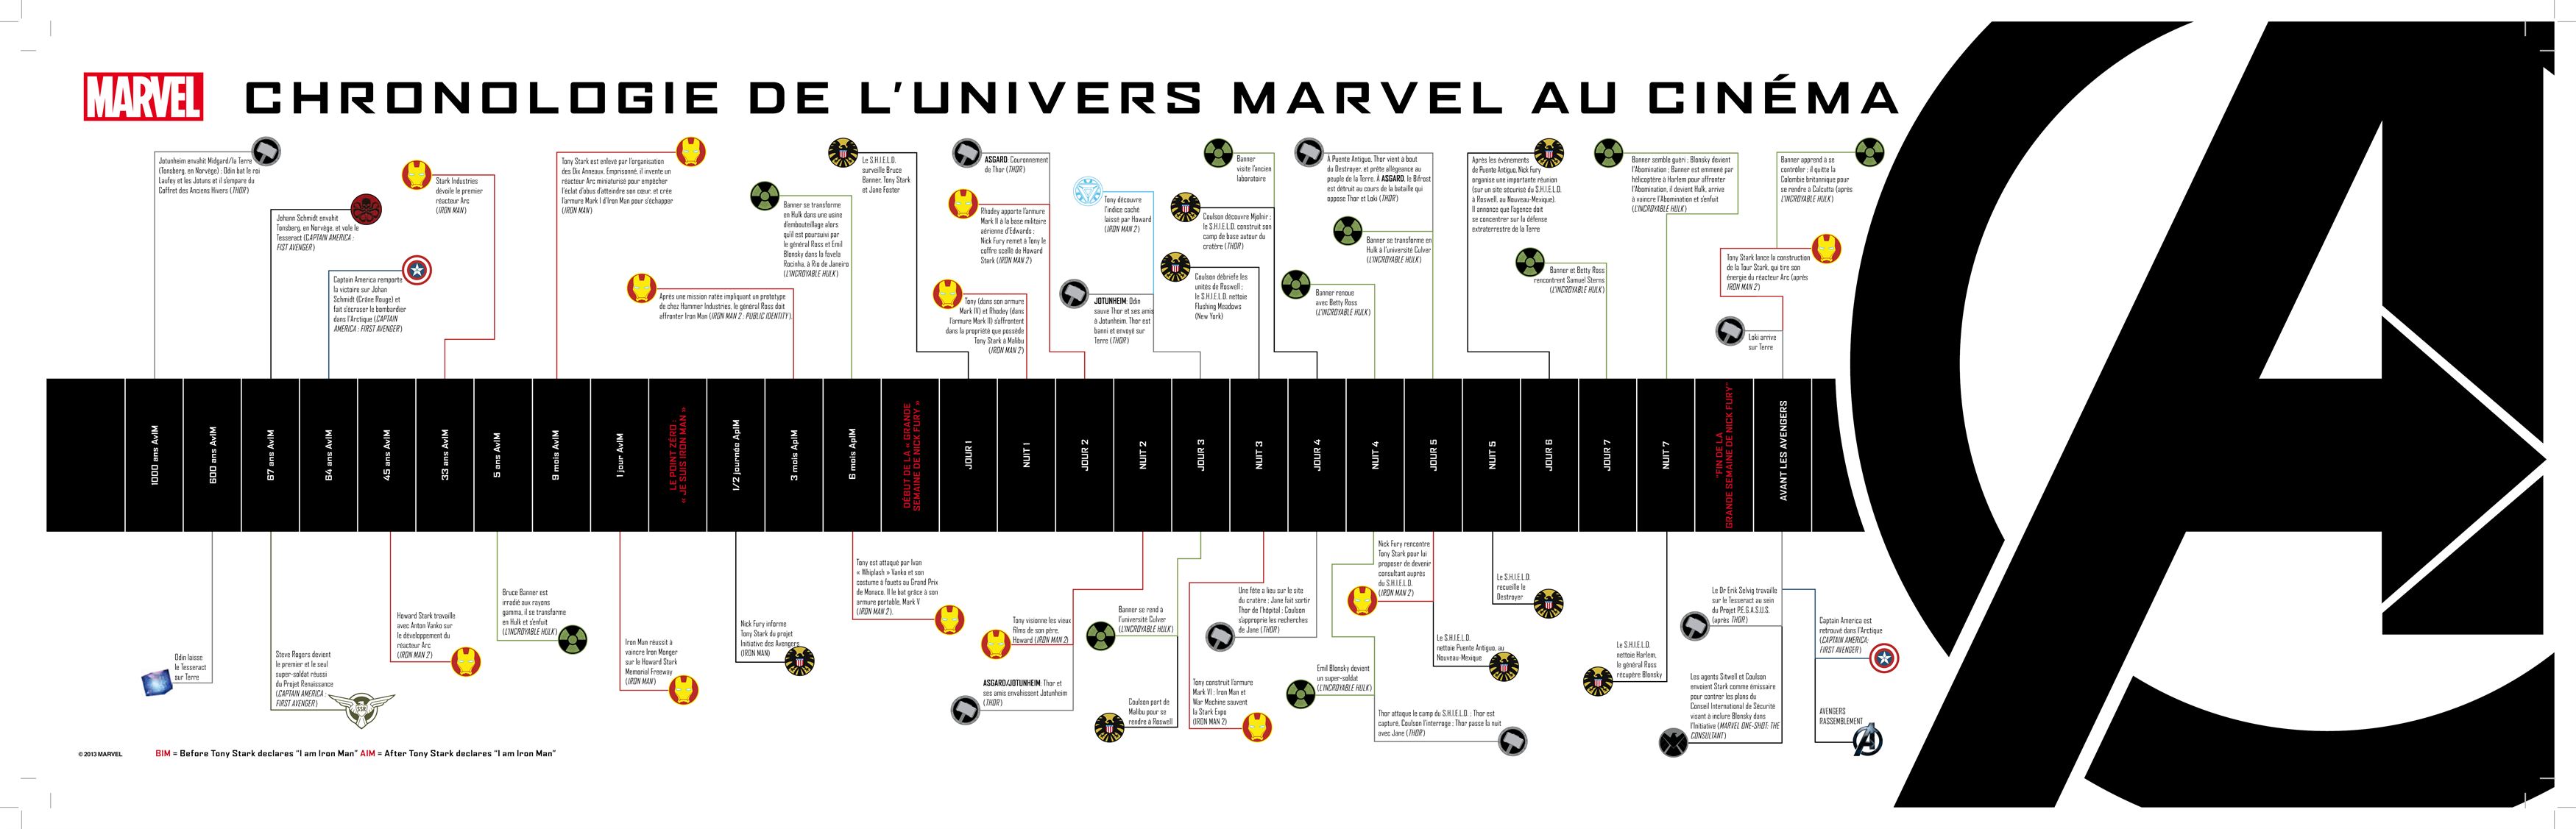 La chronologie Marvel au cinéma ! – Le Cinévore